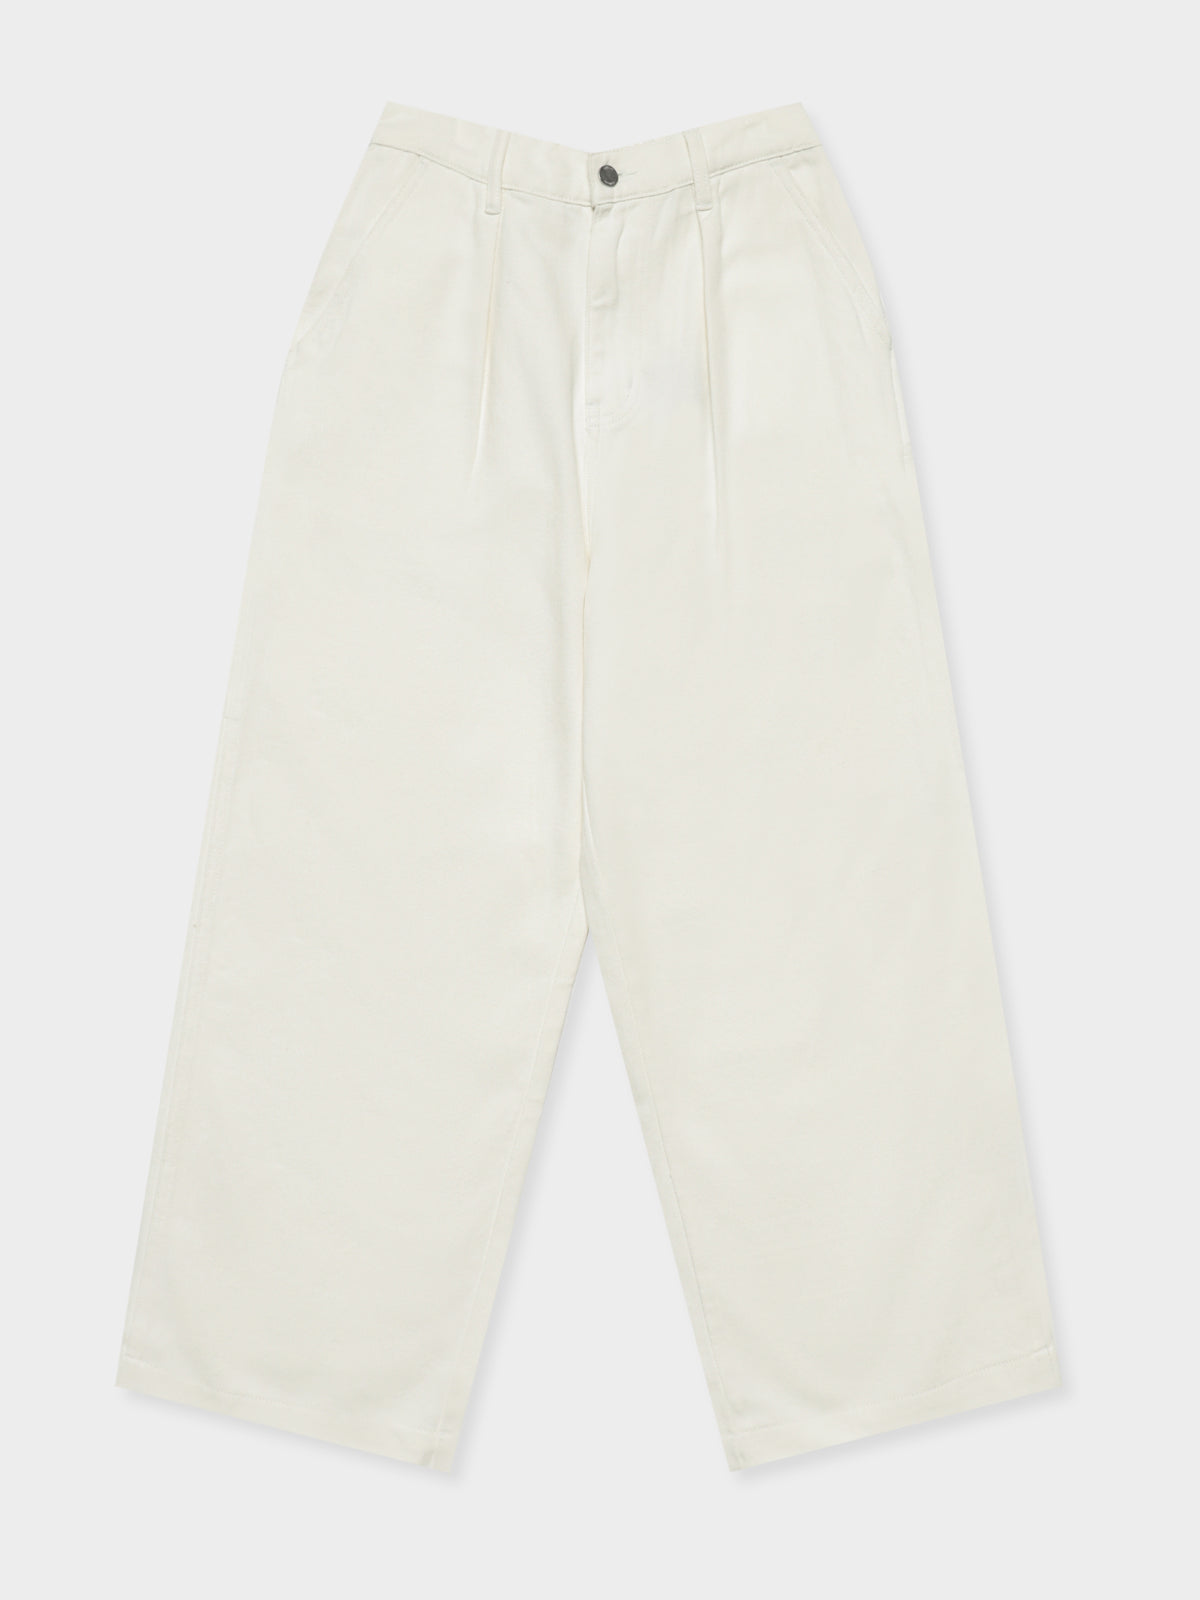 Nevada Denim Pants in White